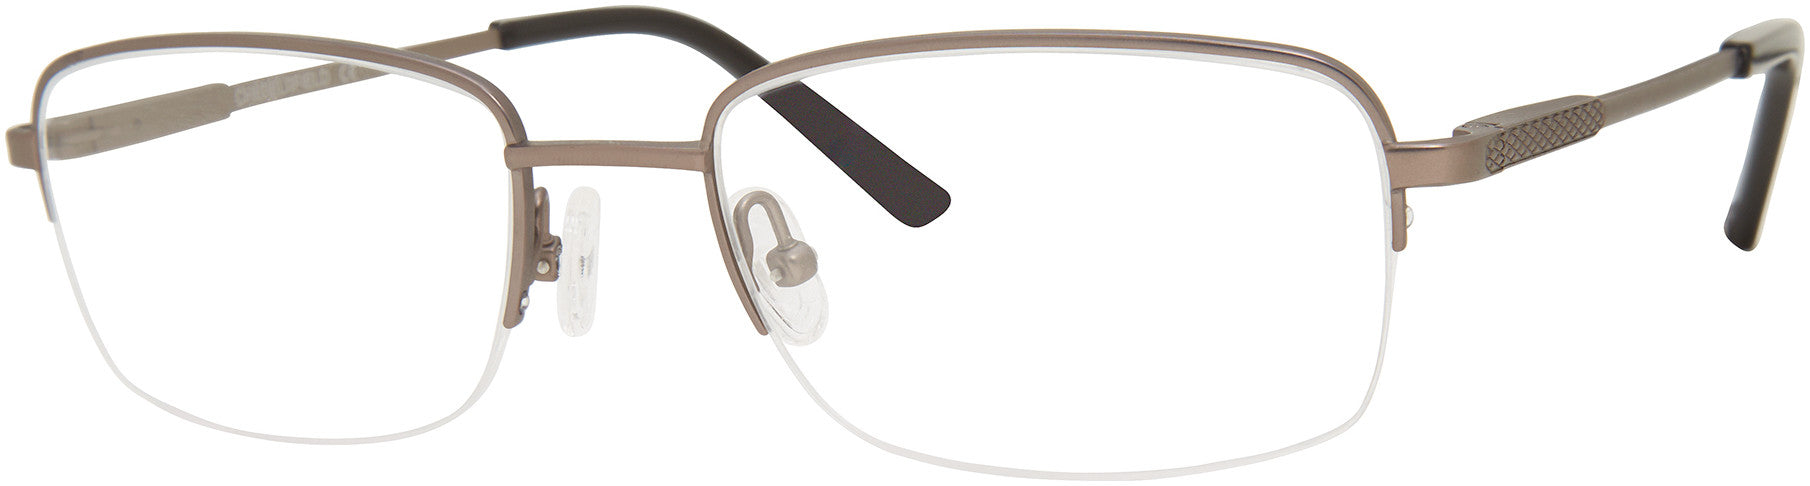  Chesterfield 891/T Rectangular Eyeglasses 0JCA-0JCA  Bakelite Gray To (00 Demo Lens)